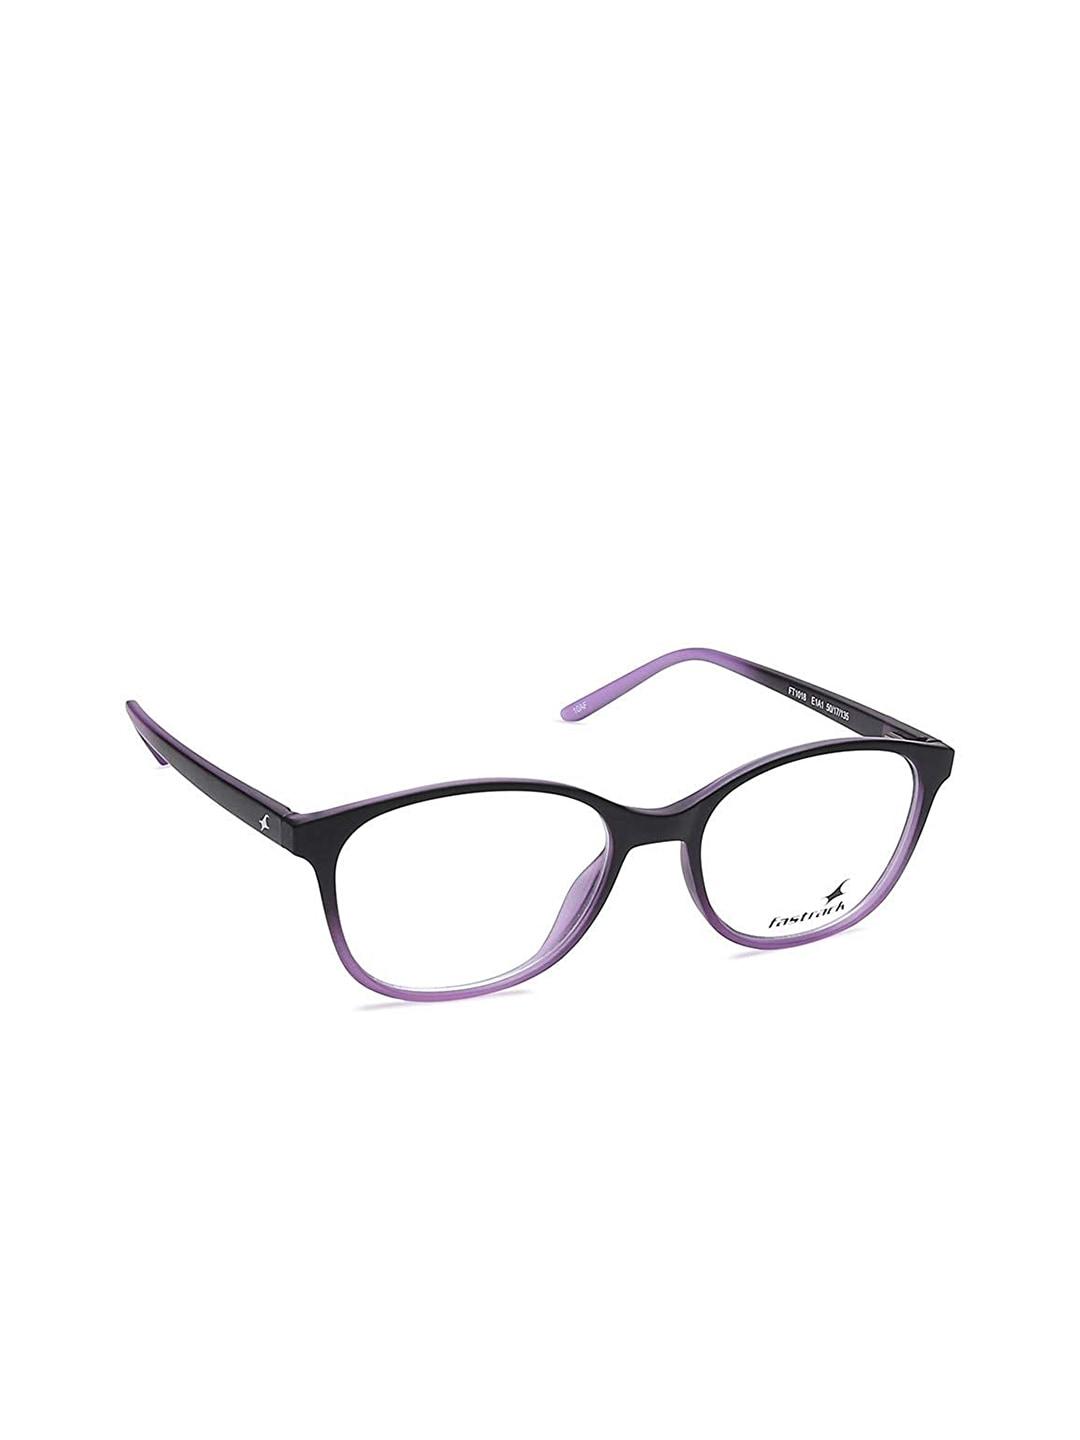 fastrack unisex purple & black full rim rectangle frames